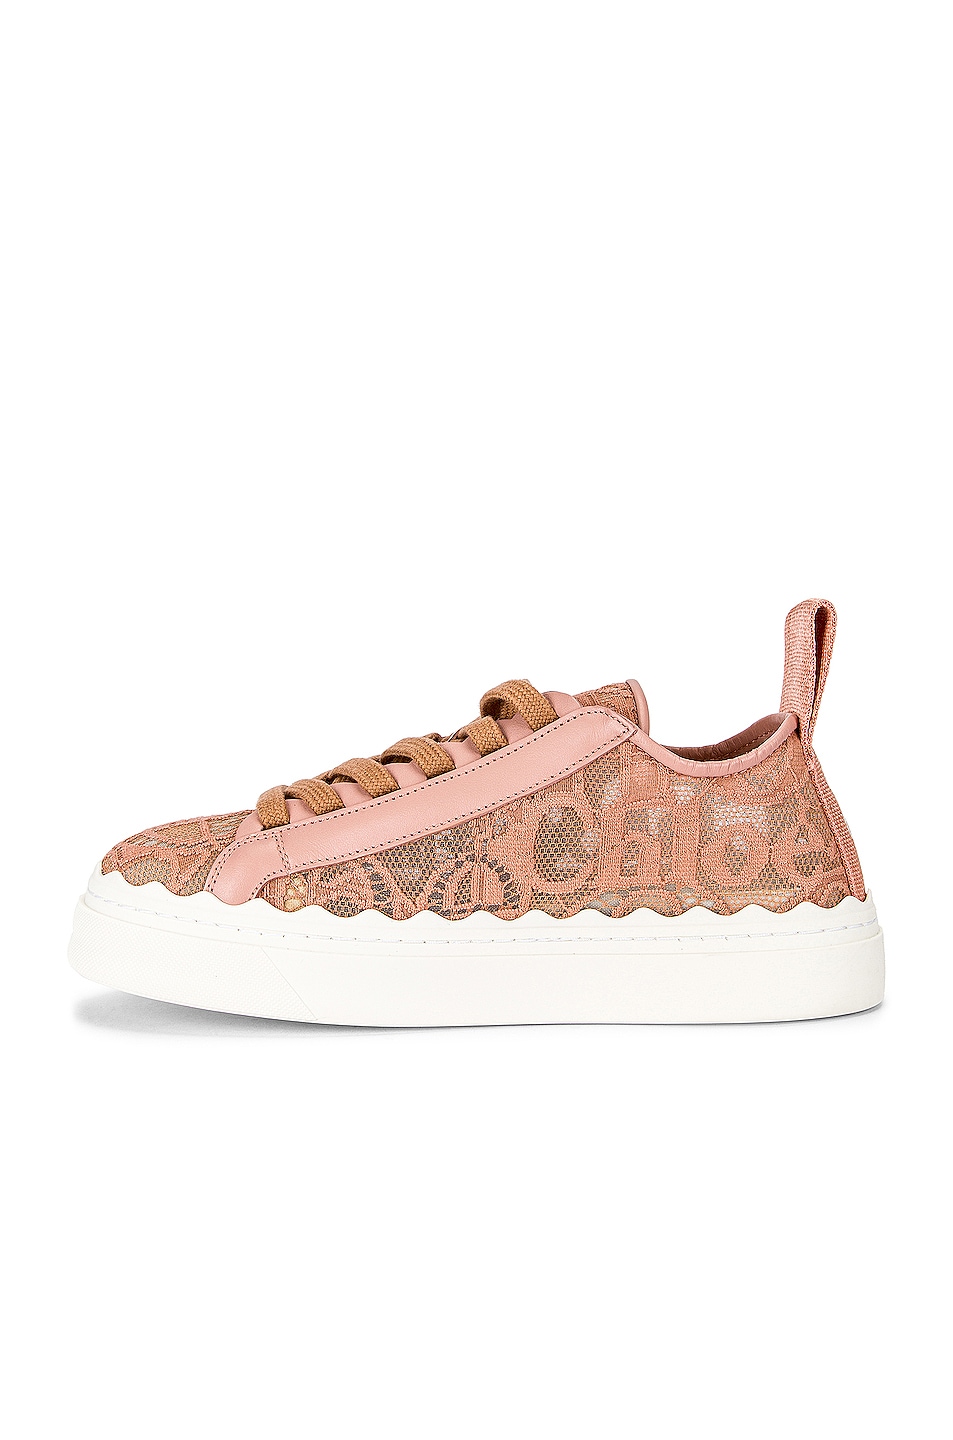 Chloe Lauren Lace Sneakers in Pink Tea | FWRD